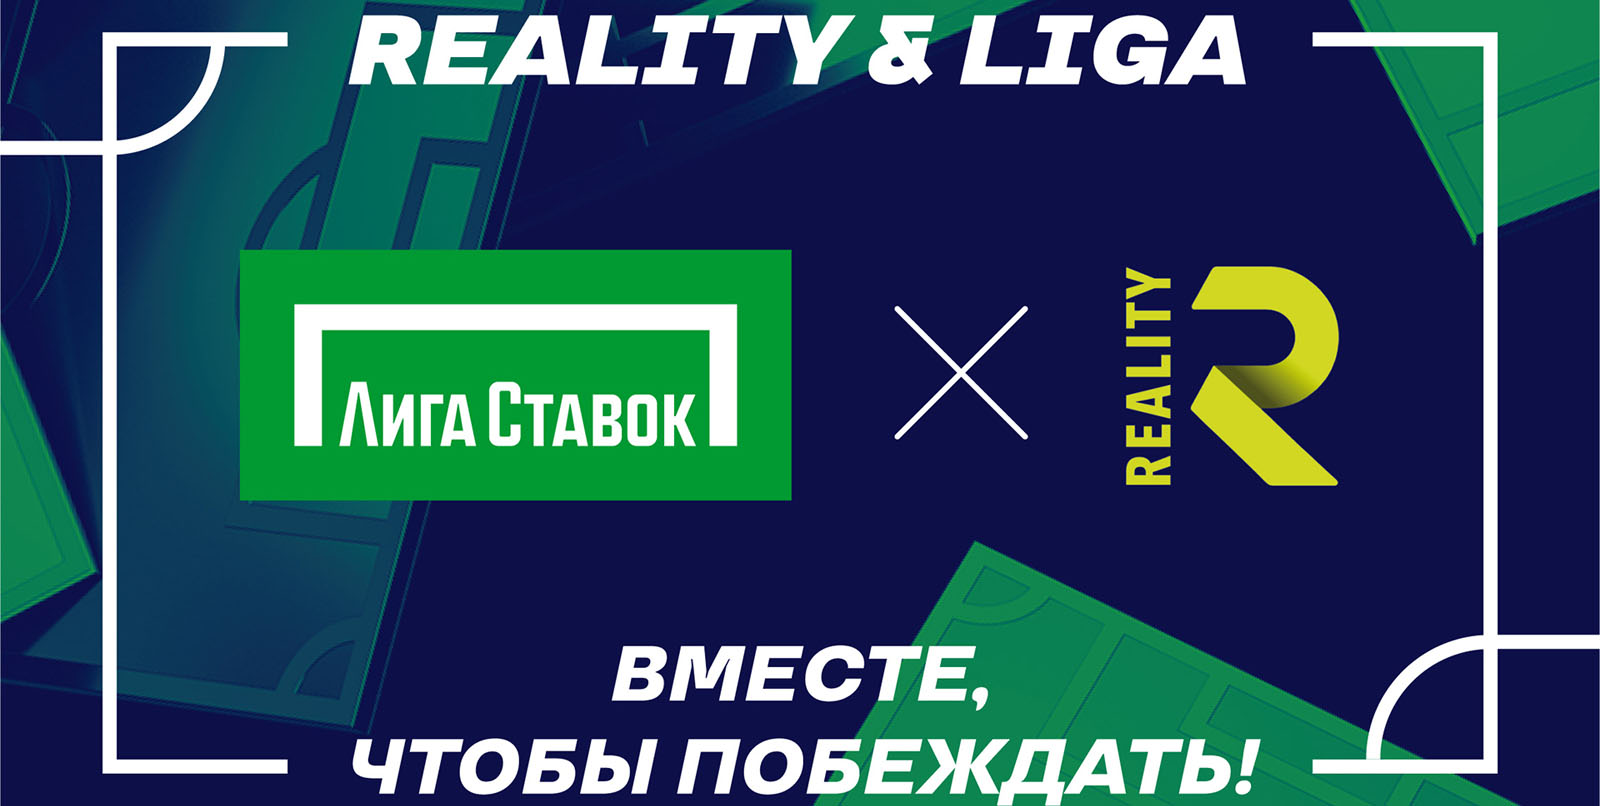 «Лига Ставок» стала титульным партнером медийного футбольного клуба FC Reality